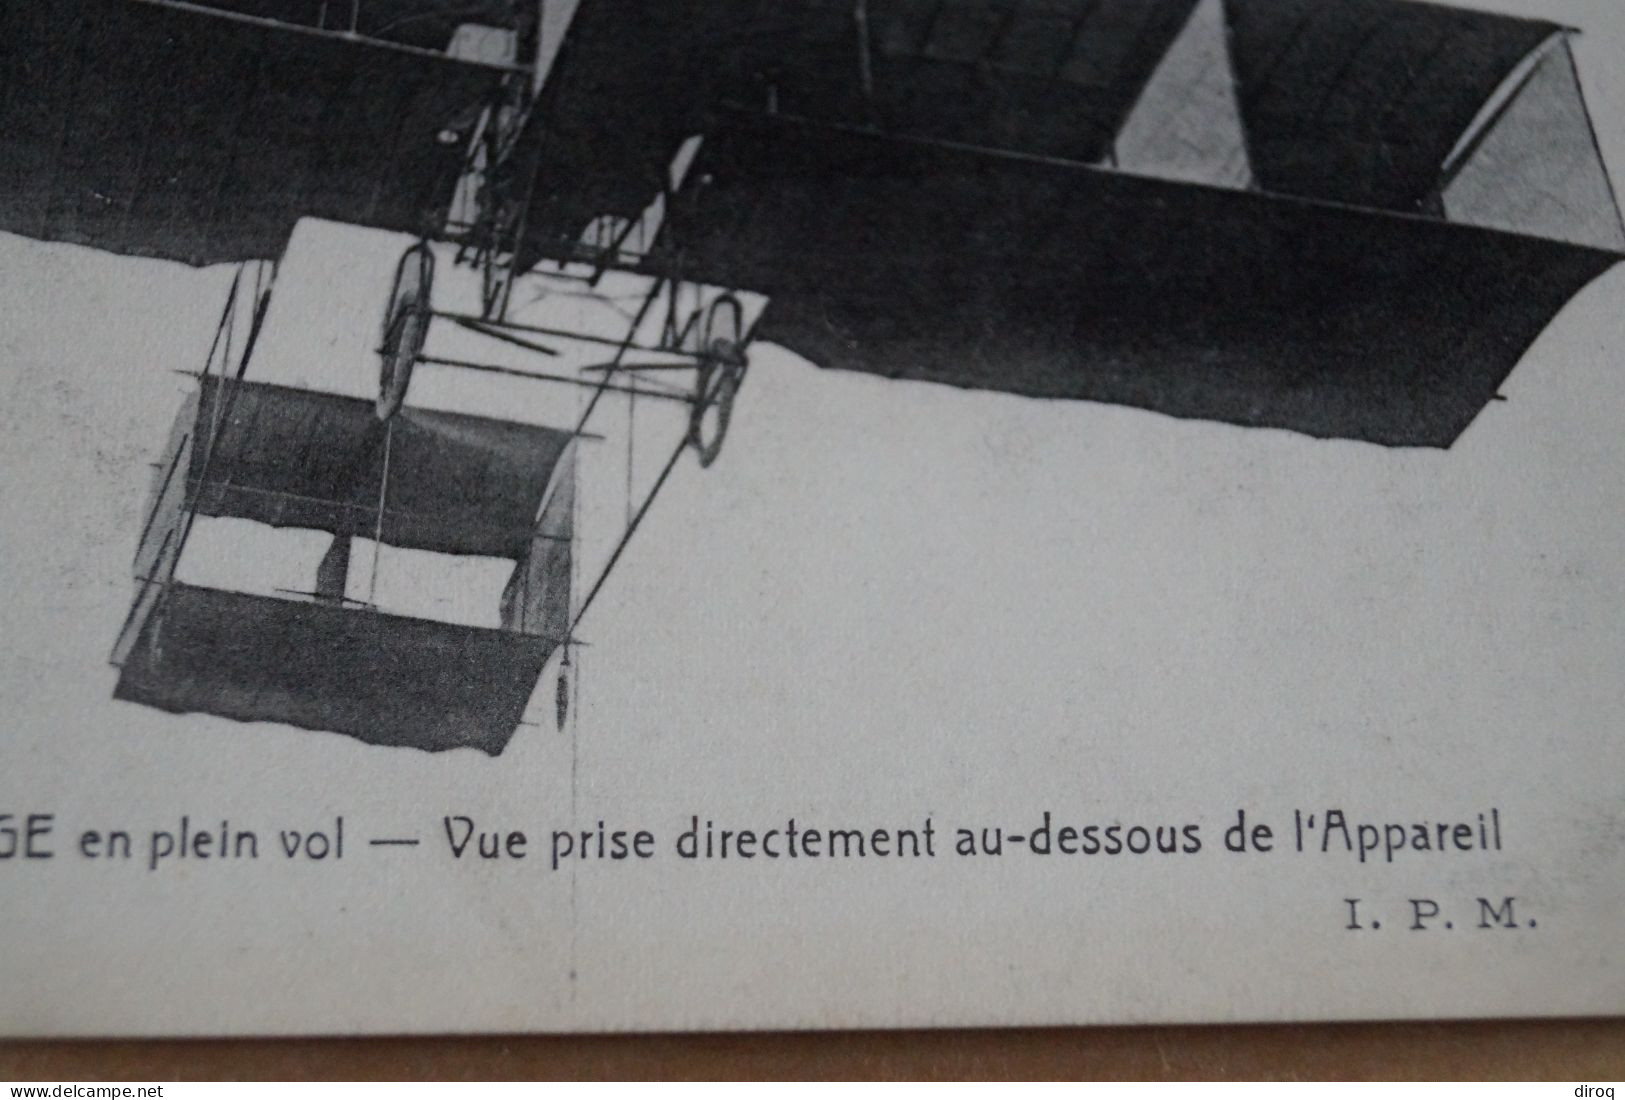 Aviation ,aviateur,l'Aéroplane Delagrange, Ancienne Carte Postale,collection - Airmen, Fliers